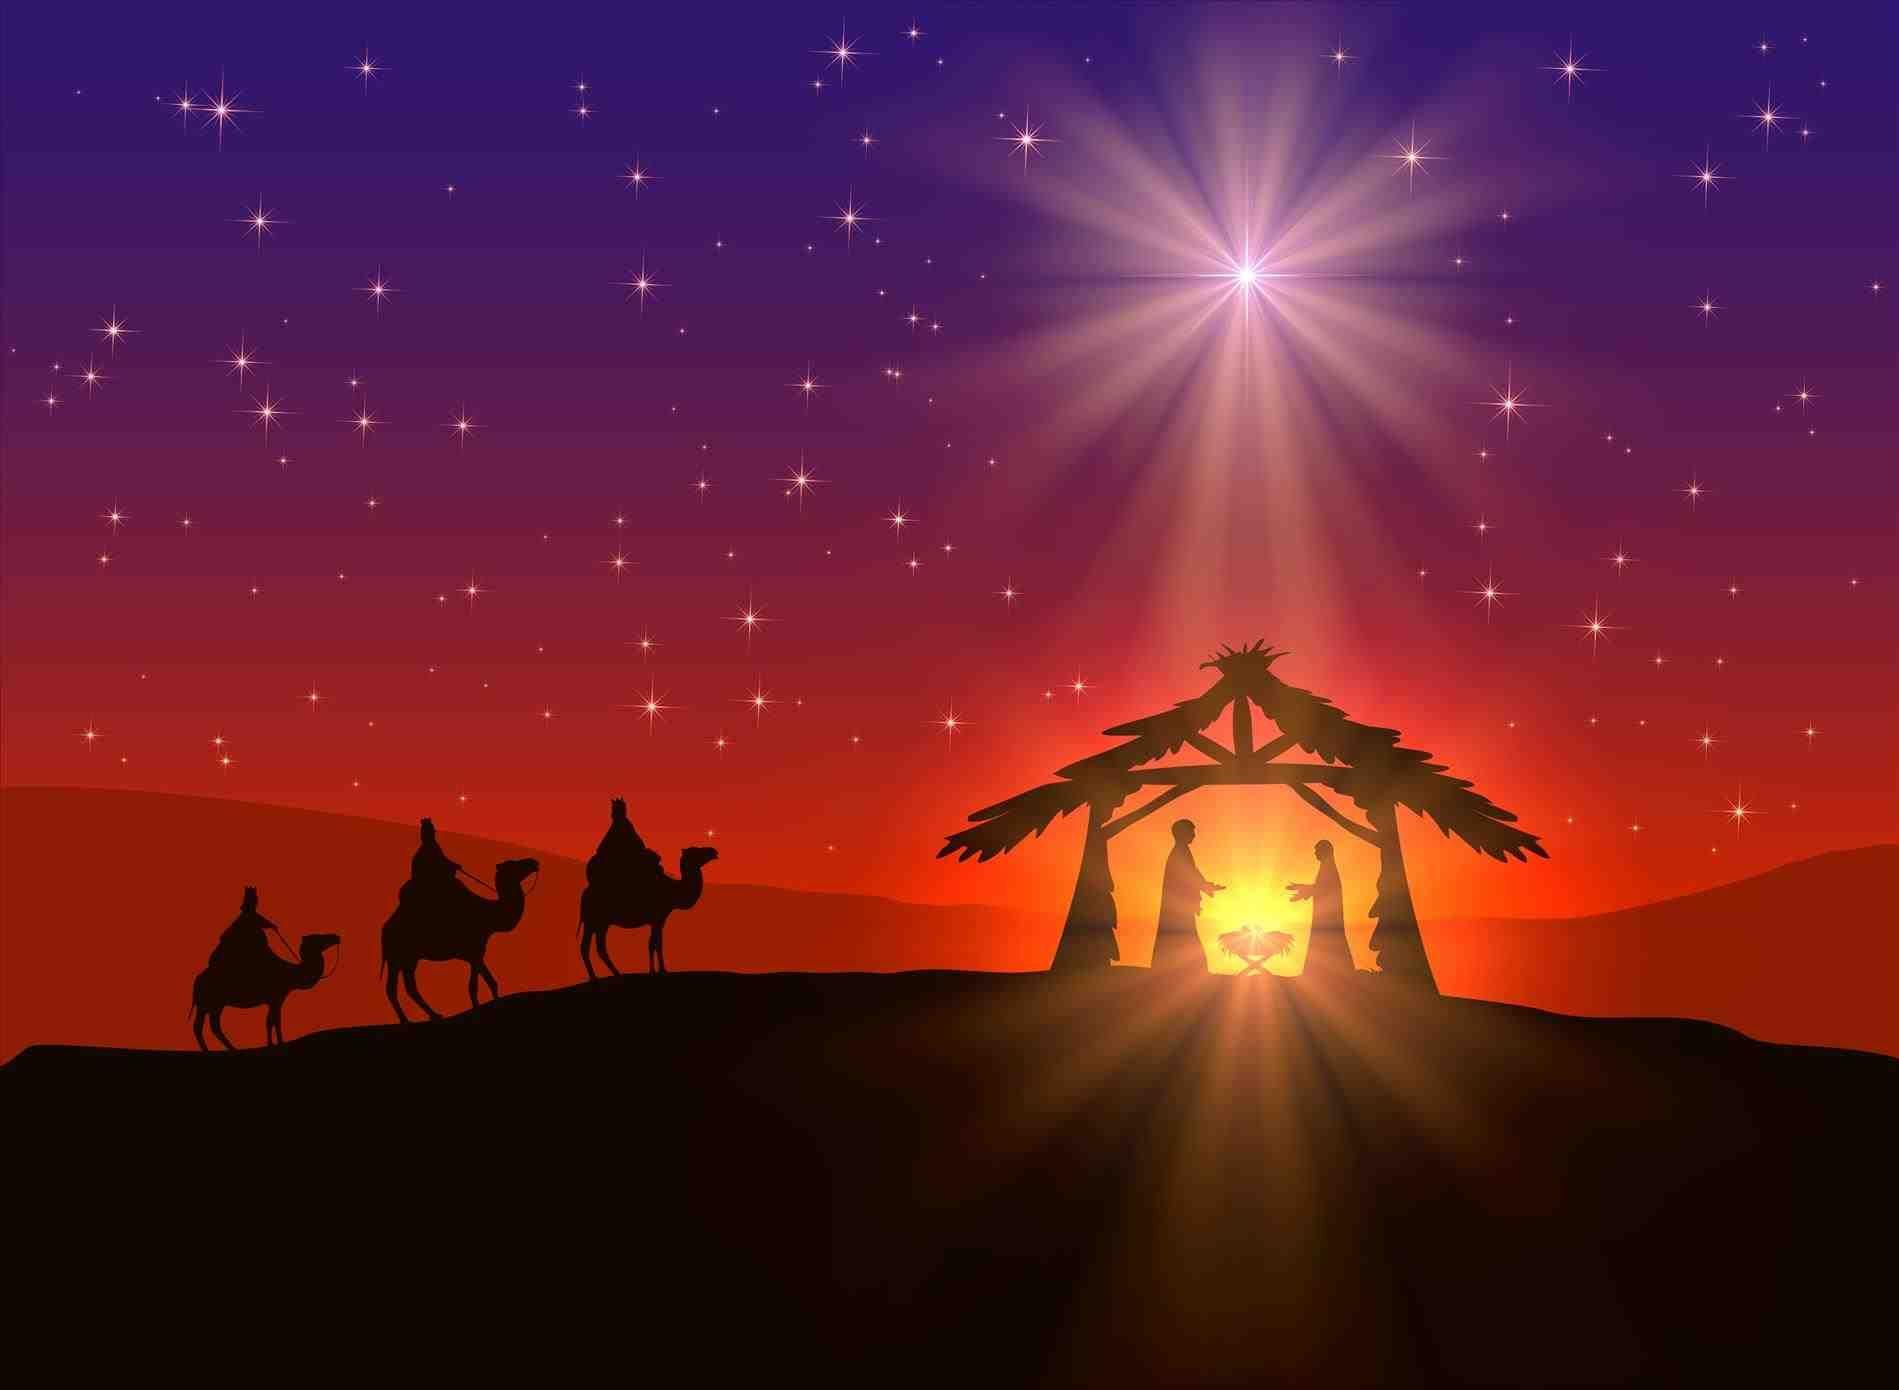 Merry Christmas Nativity Image Free. merry christmas jesus